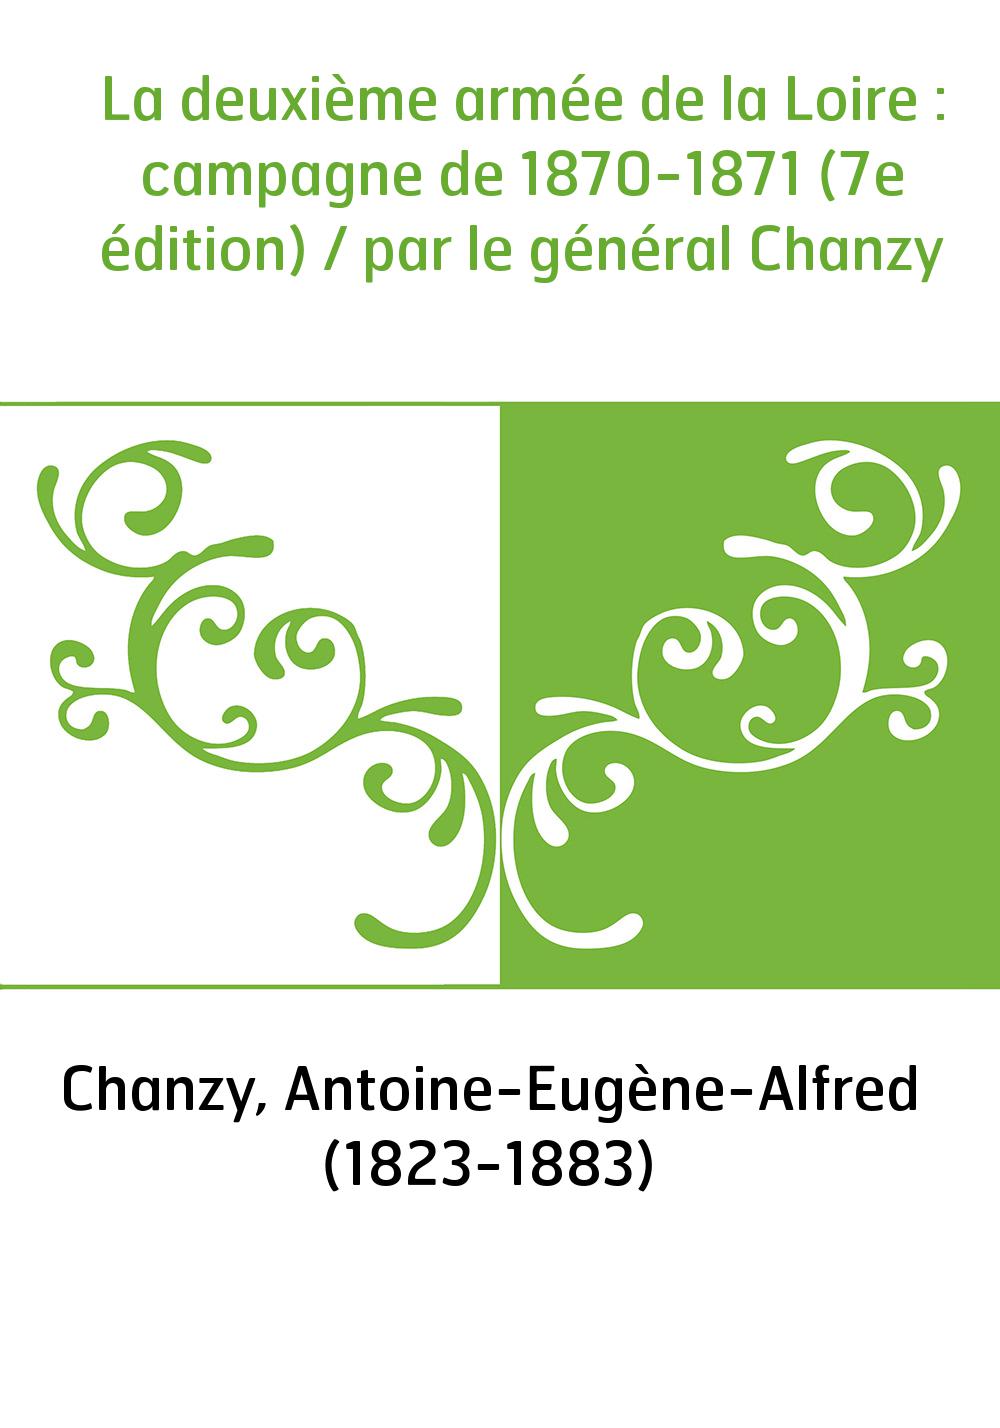 La deuxième armée de la Loire : campagne de 1870-1871 (7e édition) / par le général Chanzy